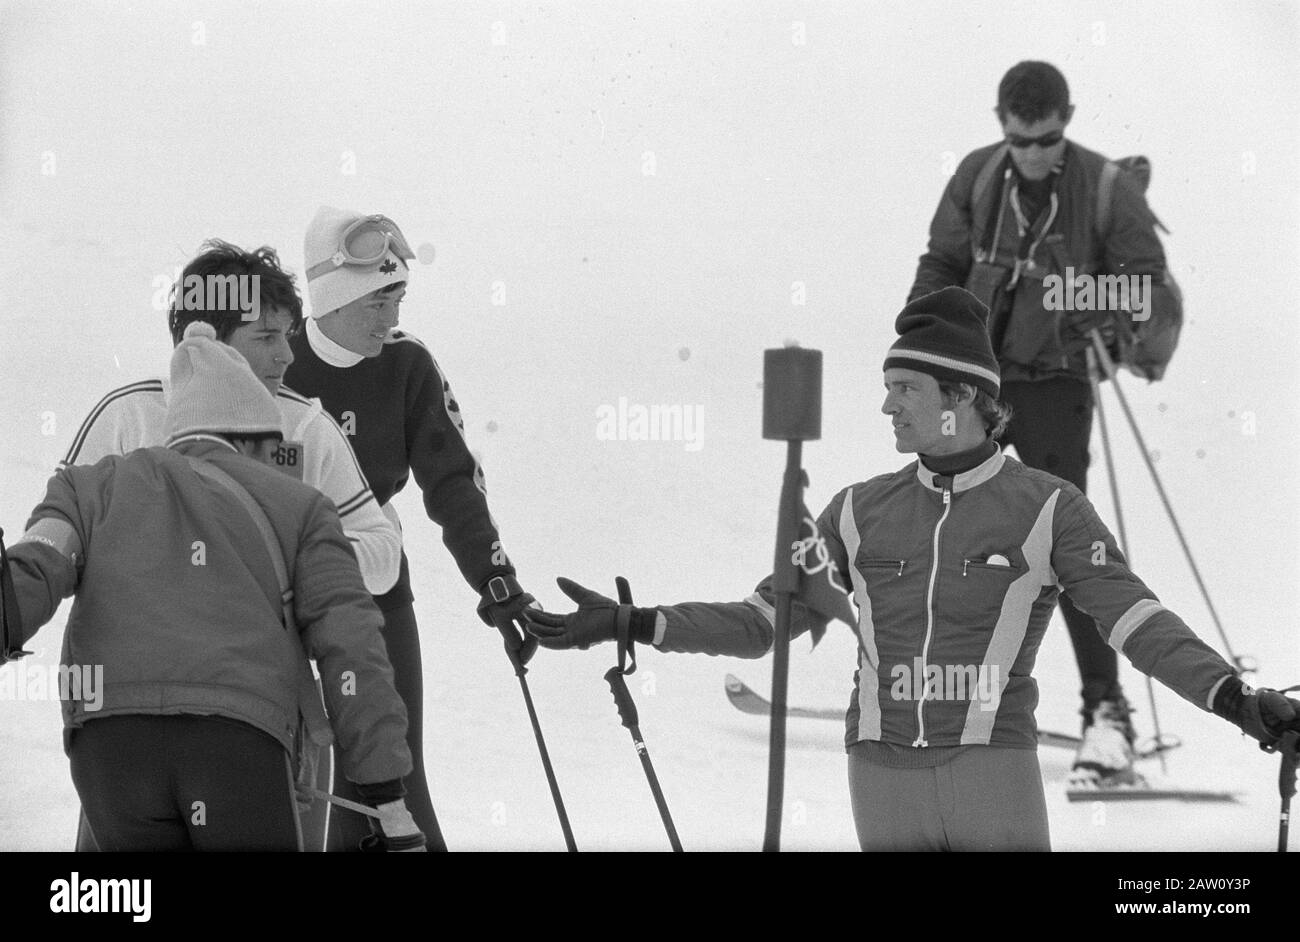 Olympics Grenoble, Jean Claude Killy Data: 13 Febbraio 1968 Ubicazione: Francia, Grenoble Parole Chiave: Sci, Sport Nome Persona: Killy Jean Claude Foto Stock